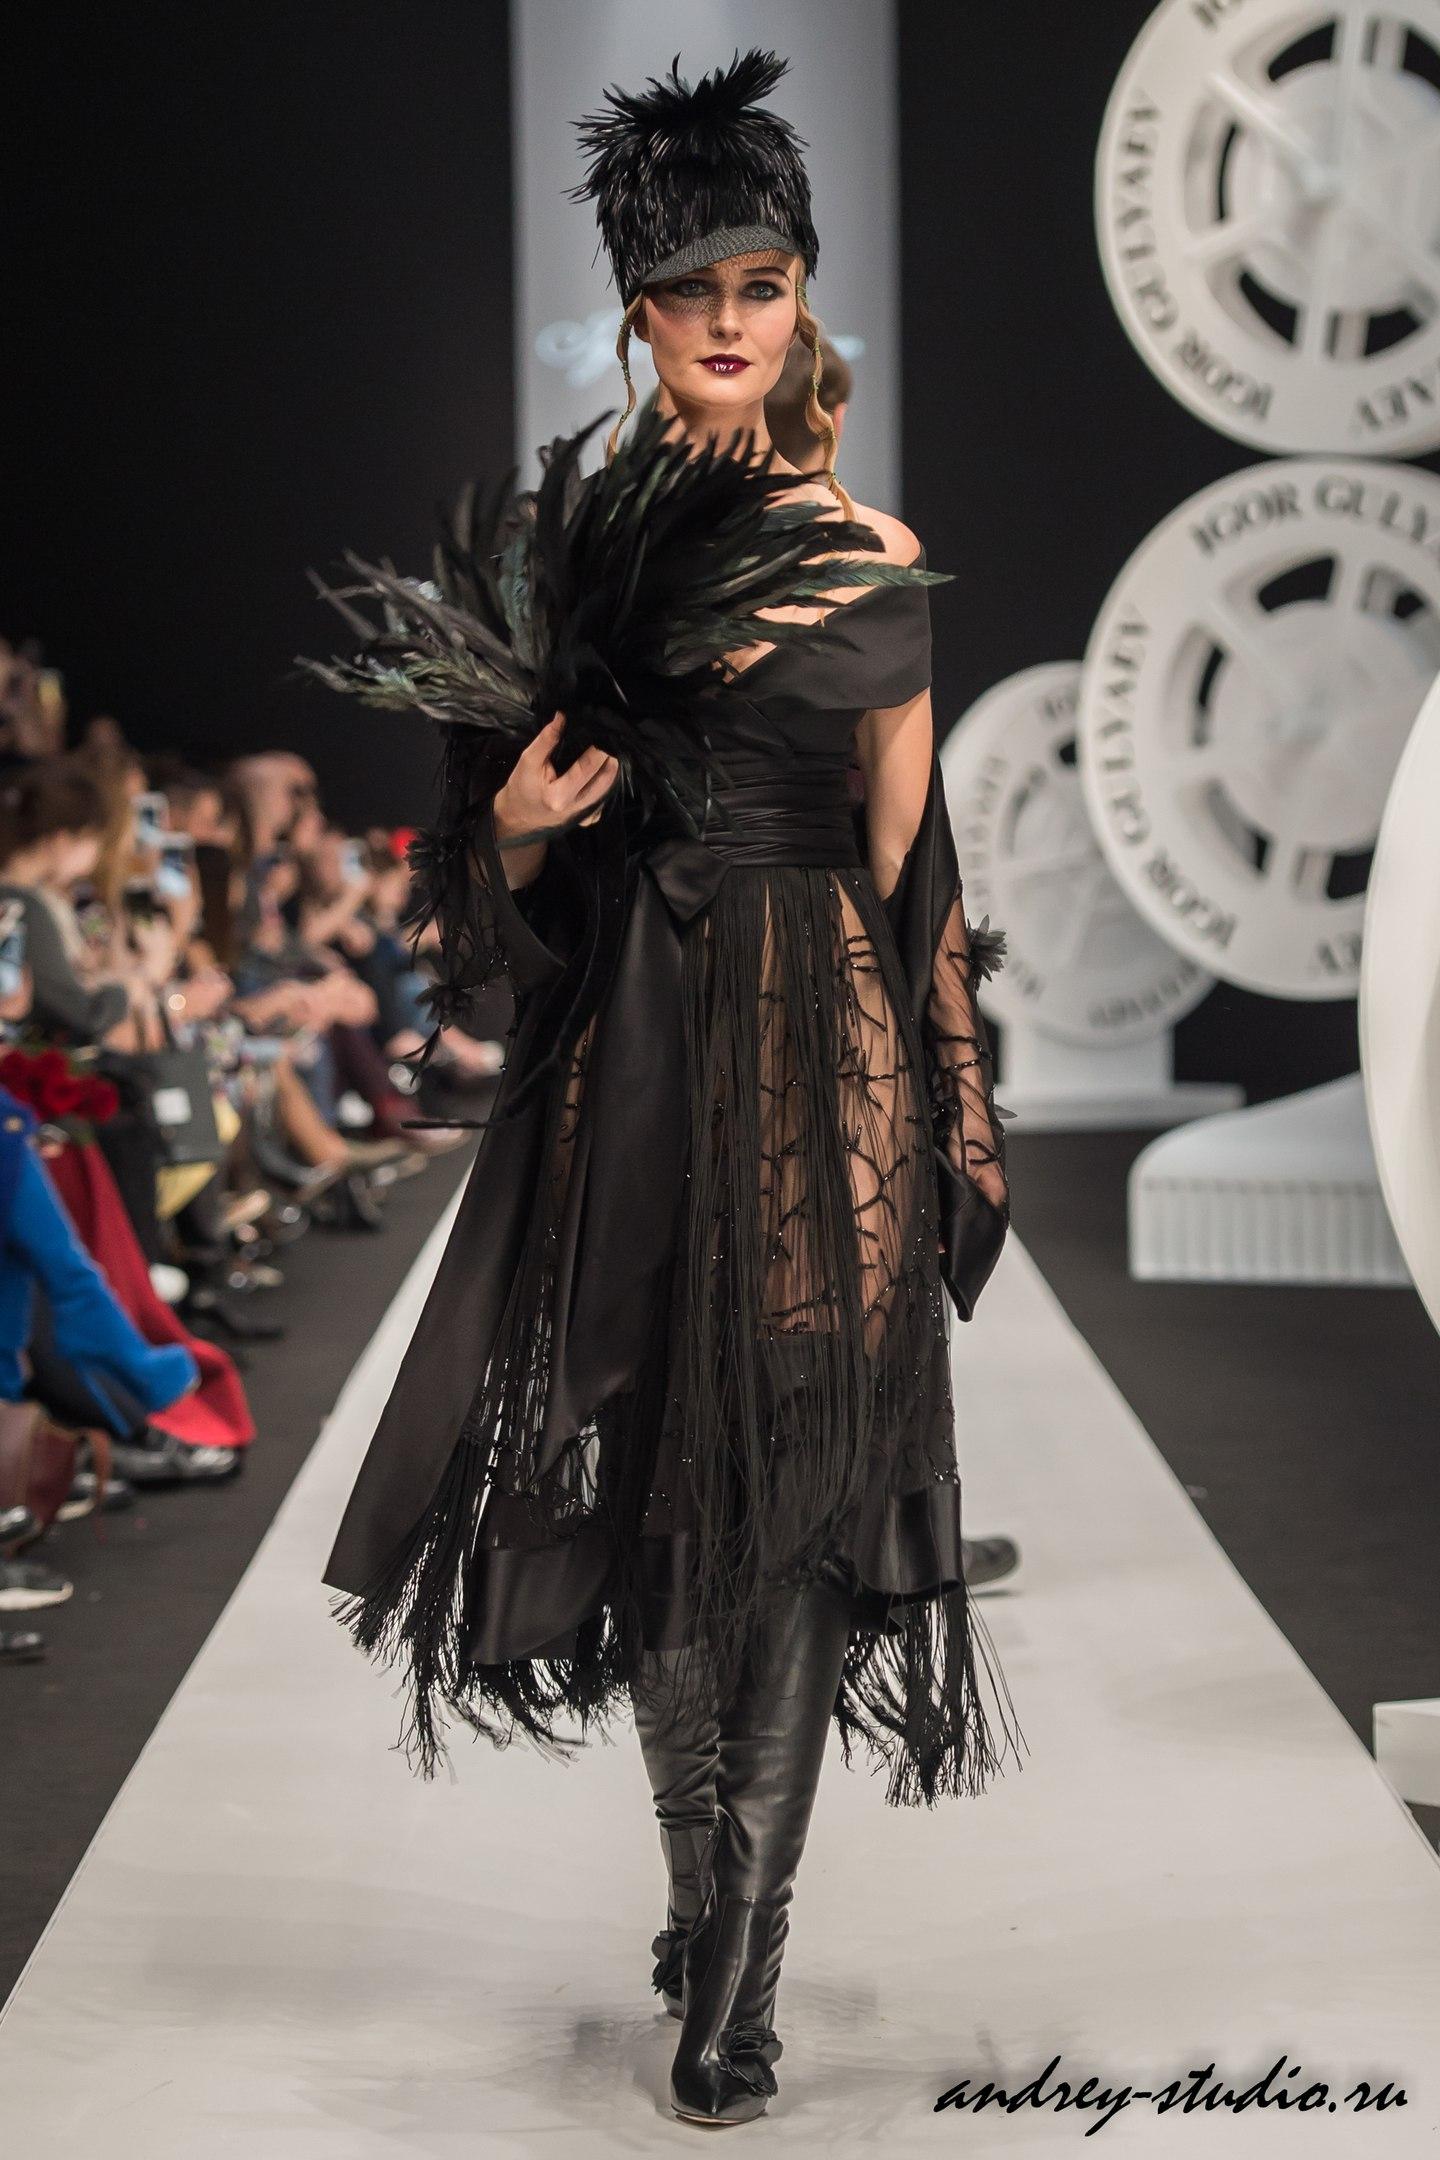 Показ новой коллекции Игоря Гуляева на Неделе Высокой моды Mercedes - Benz Fashion Week Russia 2017/18